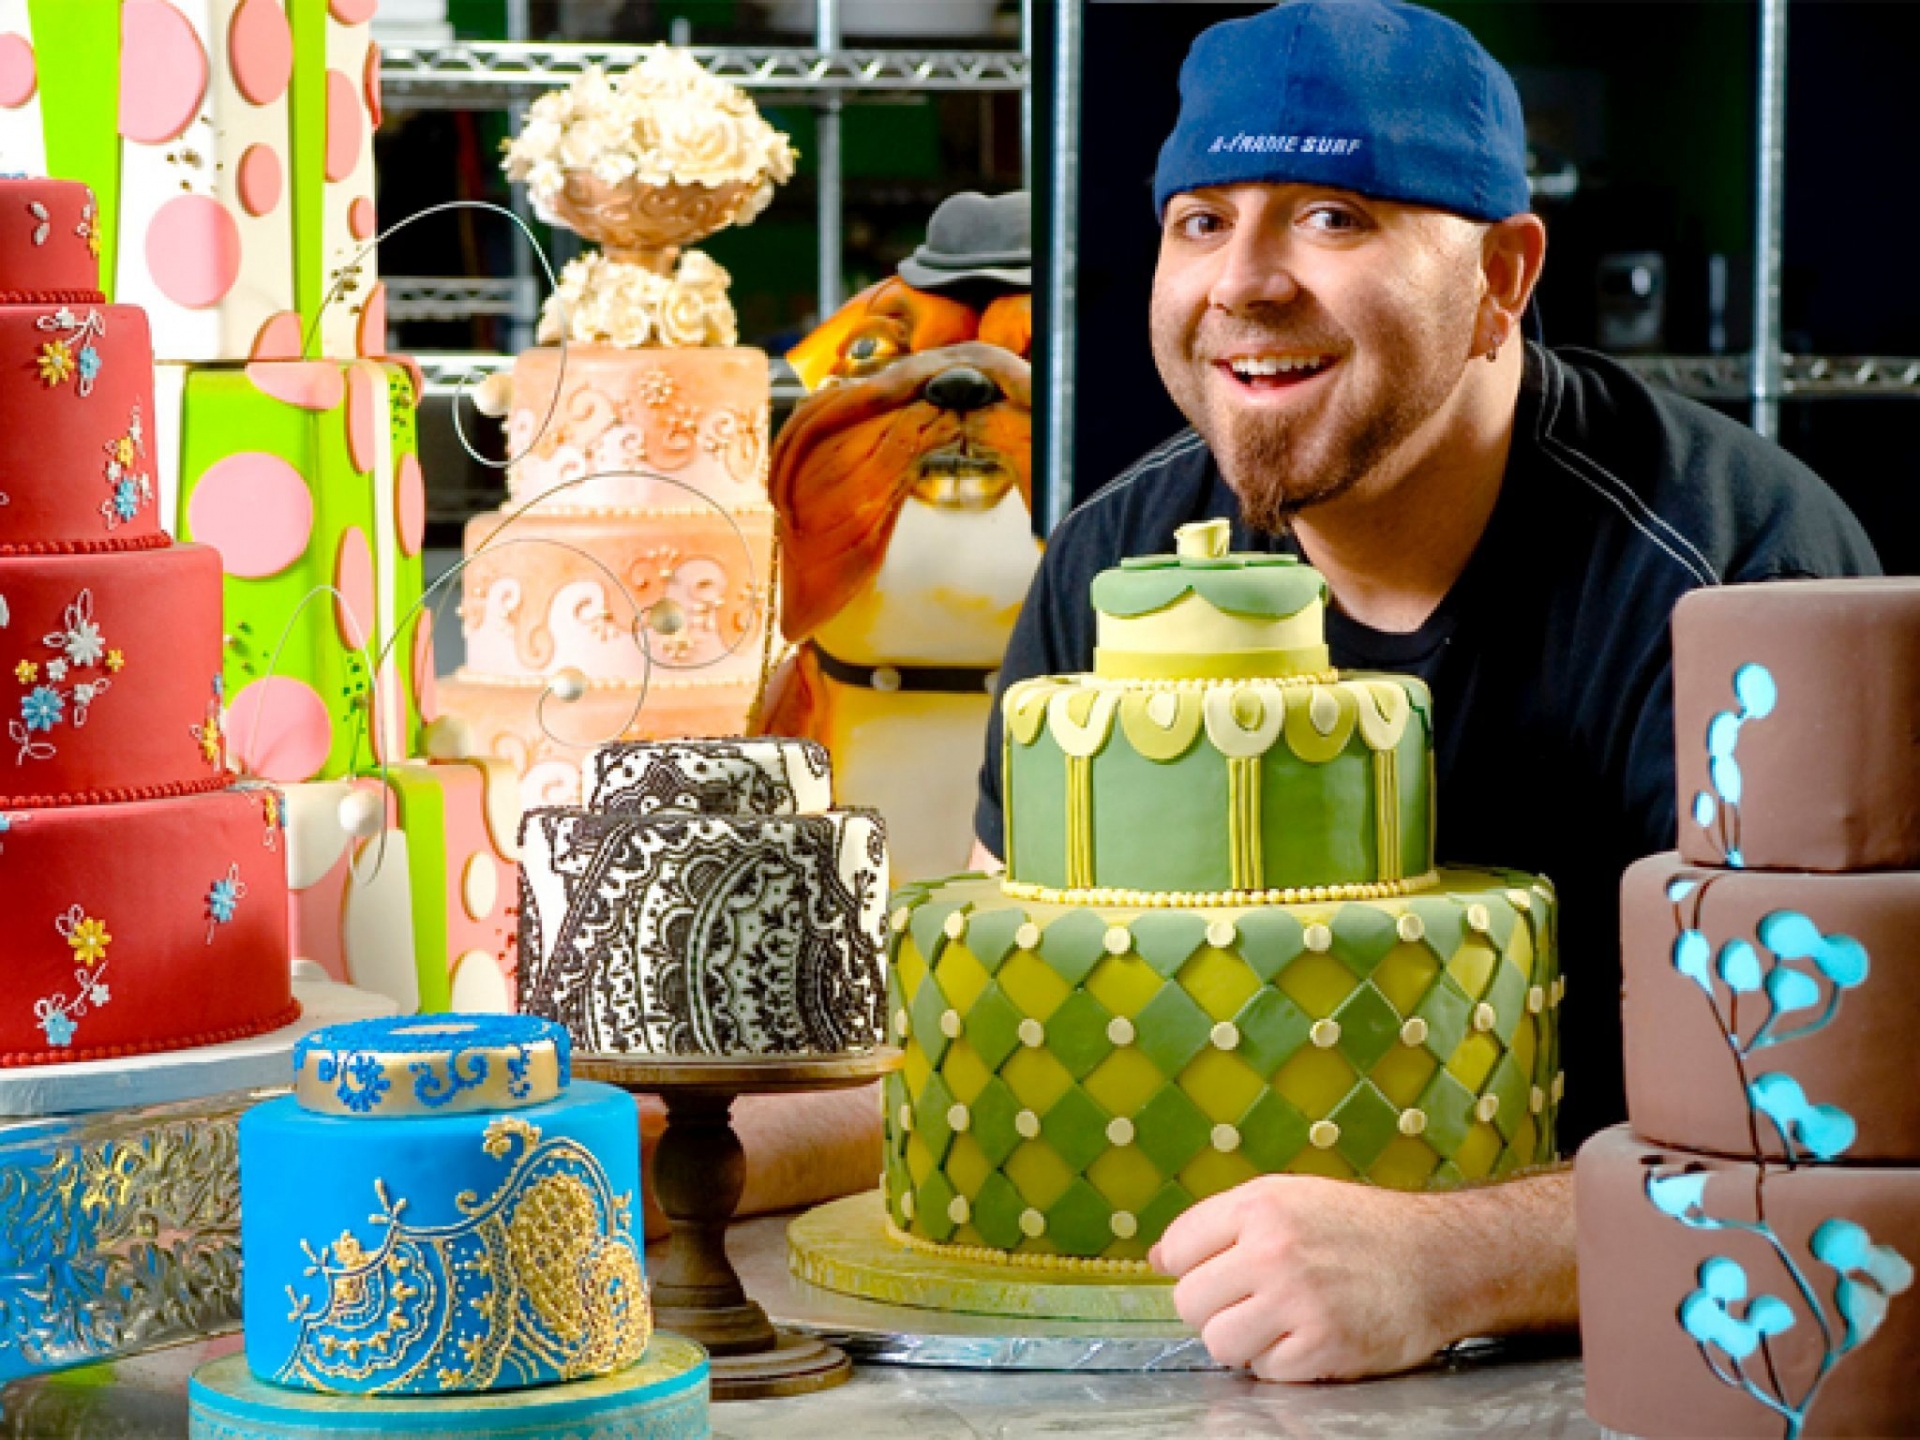 Duff Goldman - đầu bếp bánh nổi tiếng, host của chương trình 'Ace of Cakes' và những chiếc bánh fondant đặc sắc.